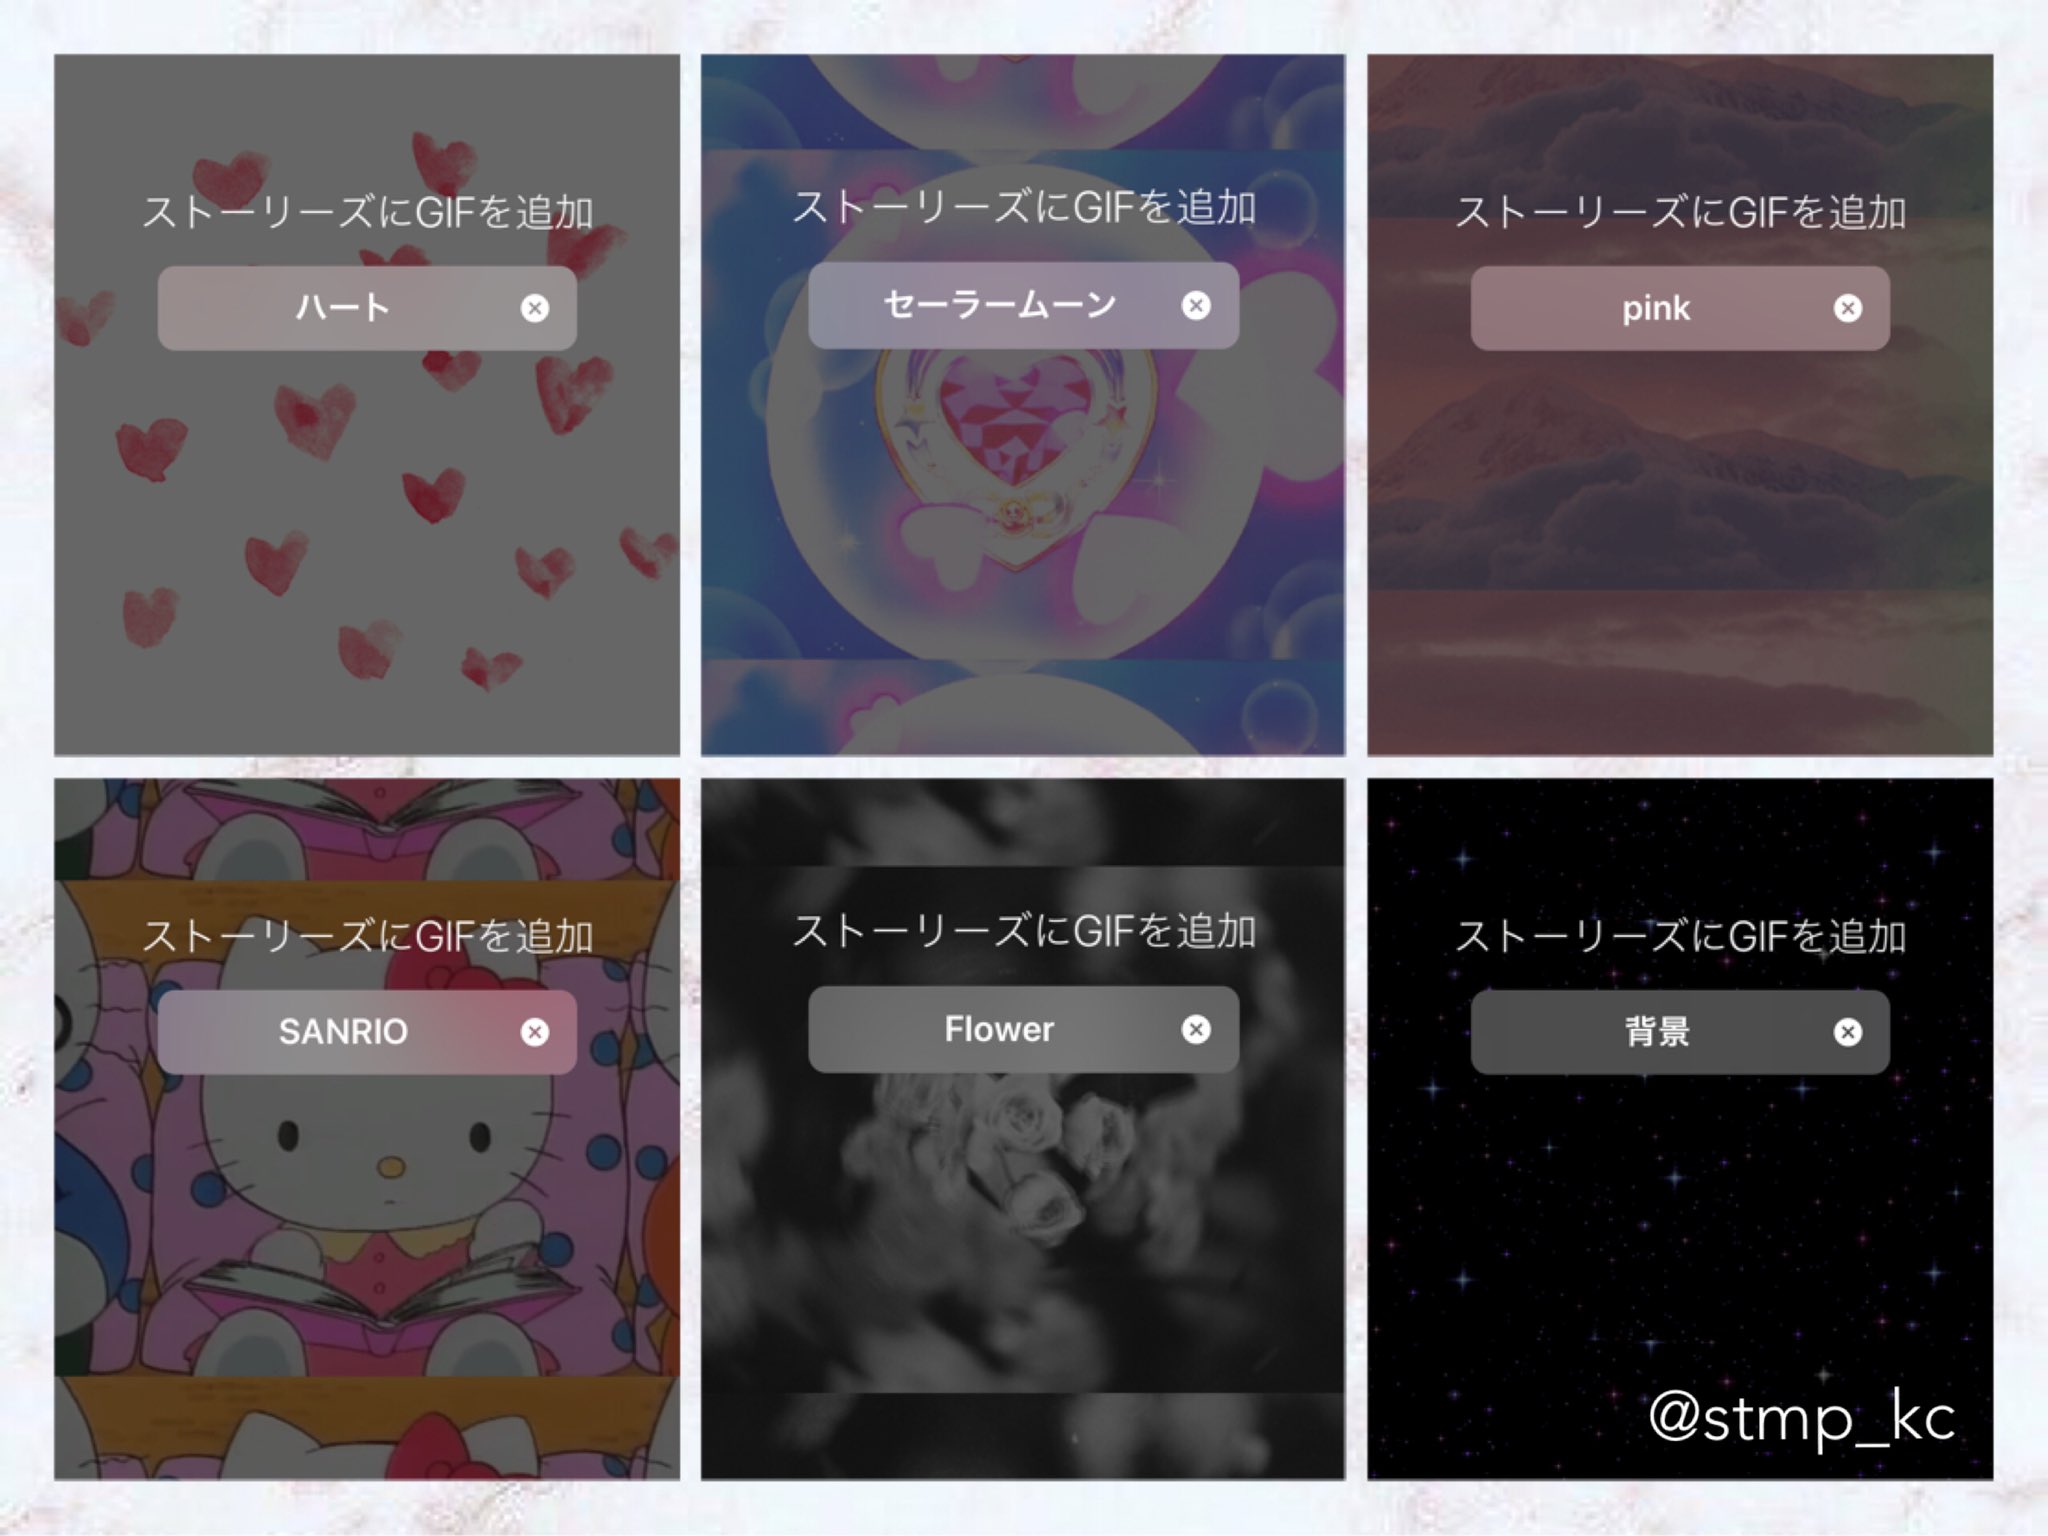 ち ちゃん ˏˋlit Link必読ˎˊ 在 Twitter 上 キラキラ Kirakira Glitter Stars Cloud 空とかもgif検索します ちーあぷり インスタストーリー Twitter